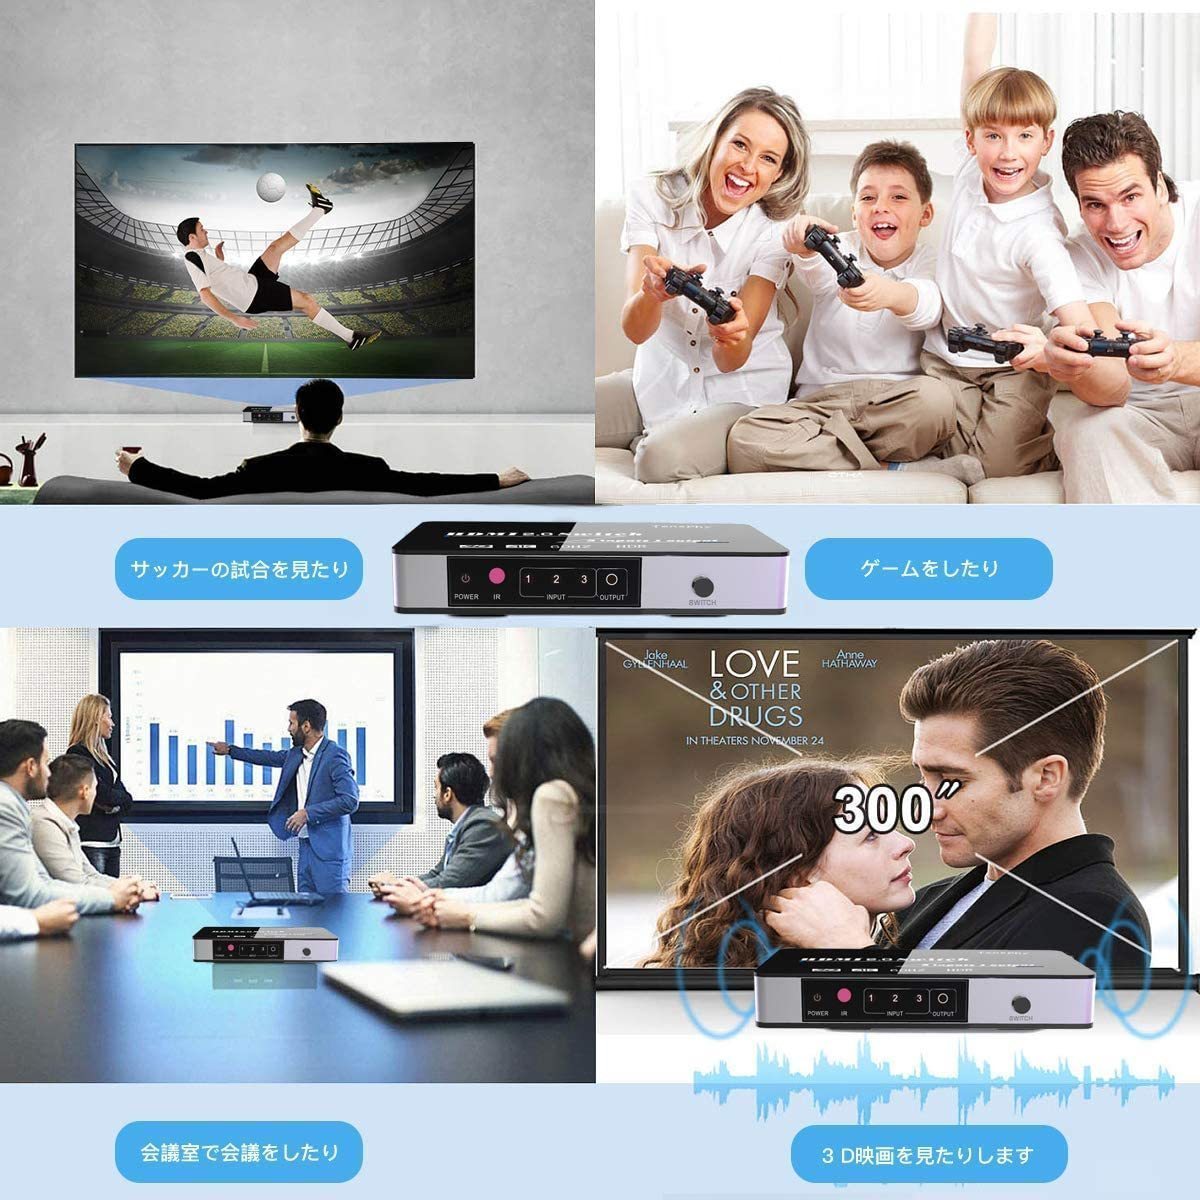 【新品送料無料】 Tensphy HDMI切替器 HDMIセレクター 3入力1出力 HDMI分配器 自由切り替え Apple TV/Chromecast/Switch/Xbox/HDTV/PS4